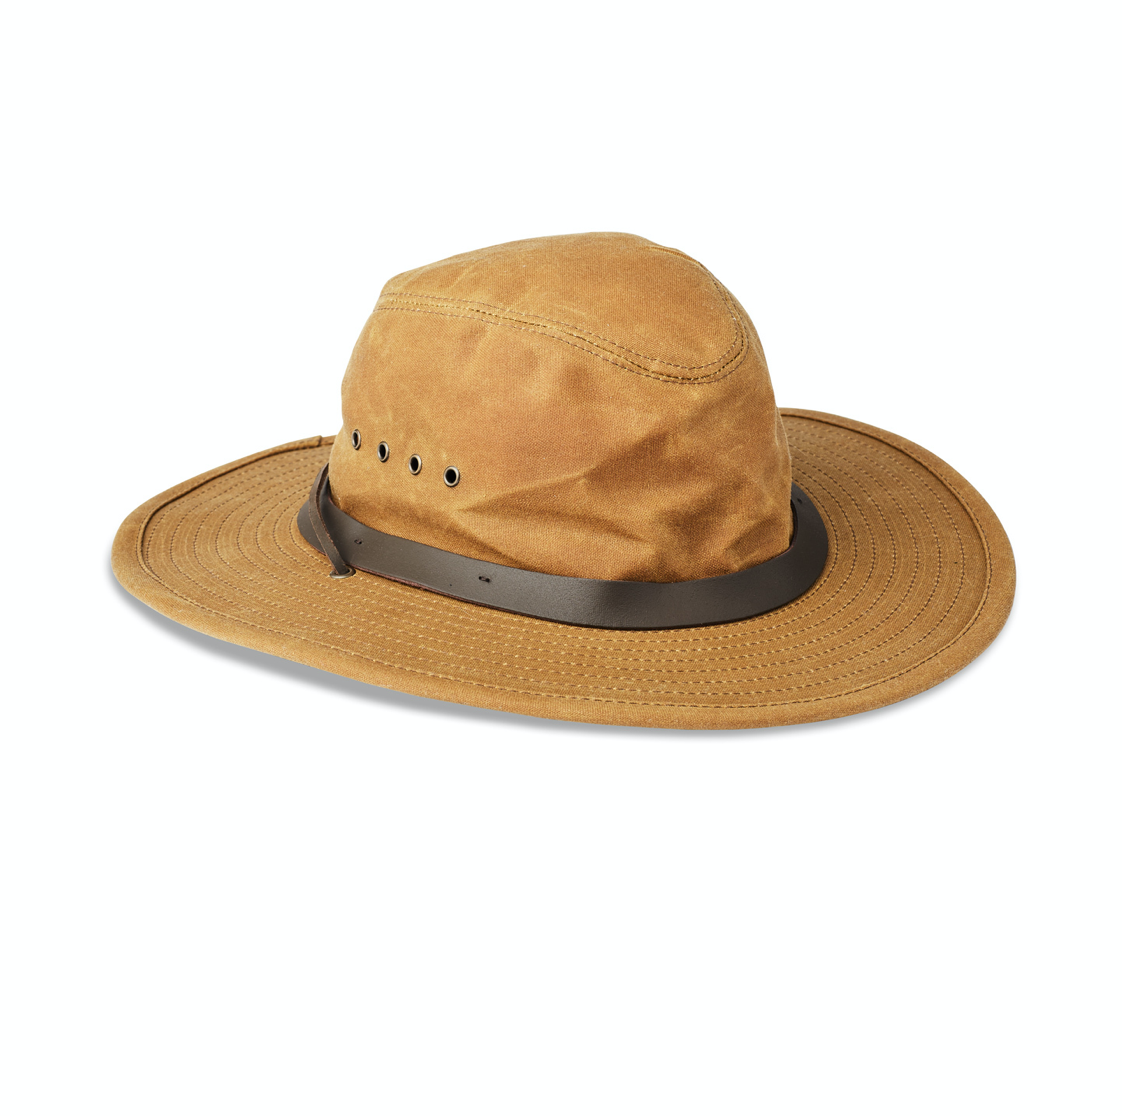 Hats — Portland outdoor store